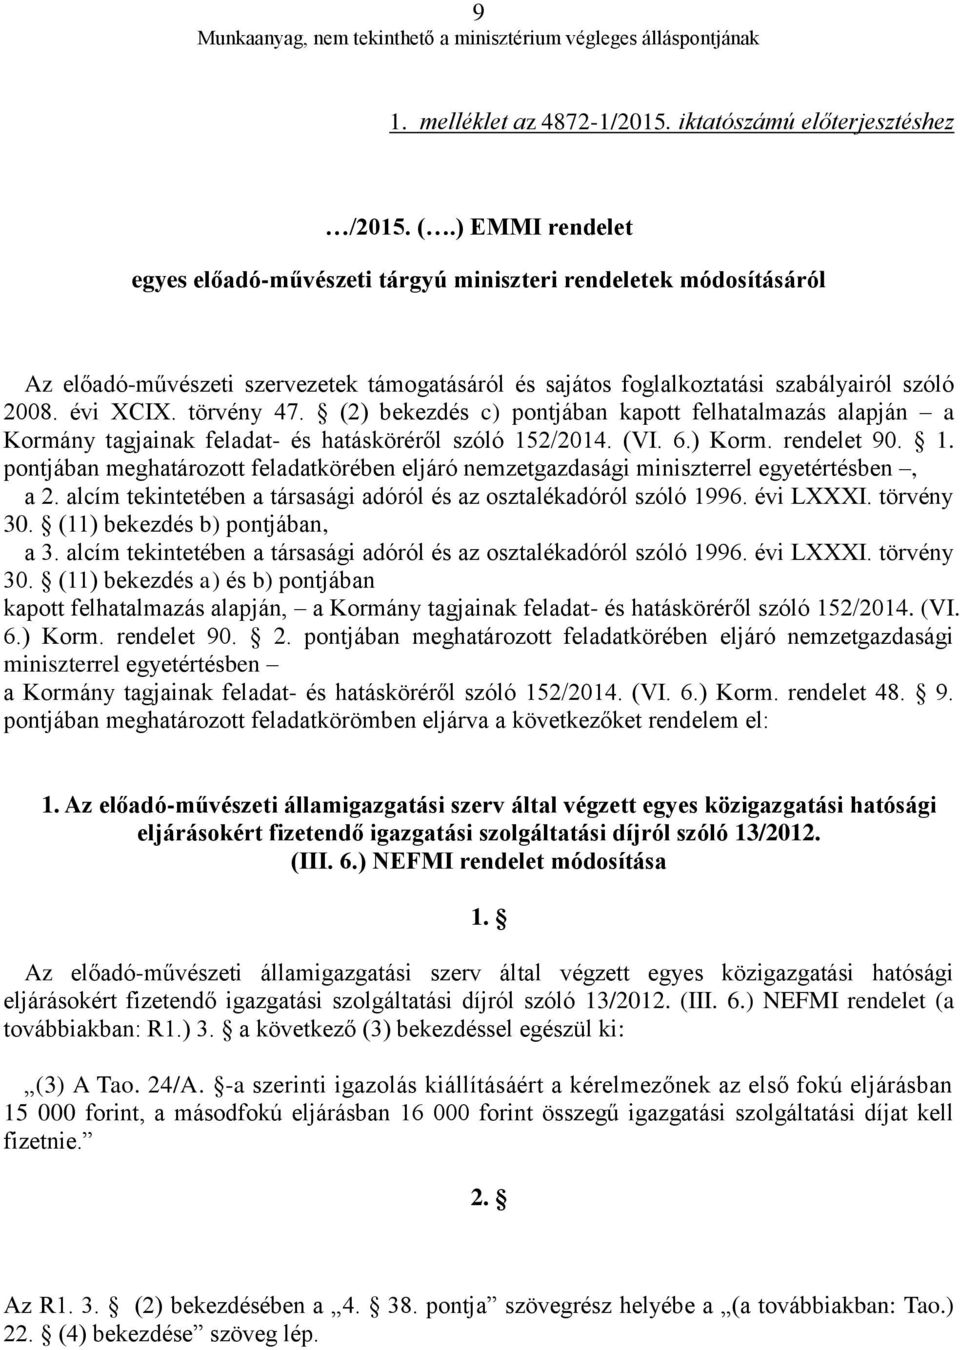 törvény 47. (2) bekezdés c) pontjában kapott felhatalmazás alapján a Kormány tagjainak feladat- és hatásköréről szóló 15